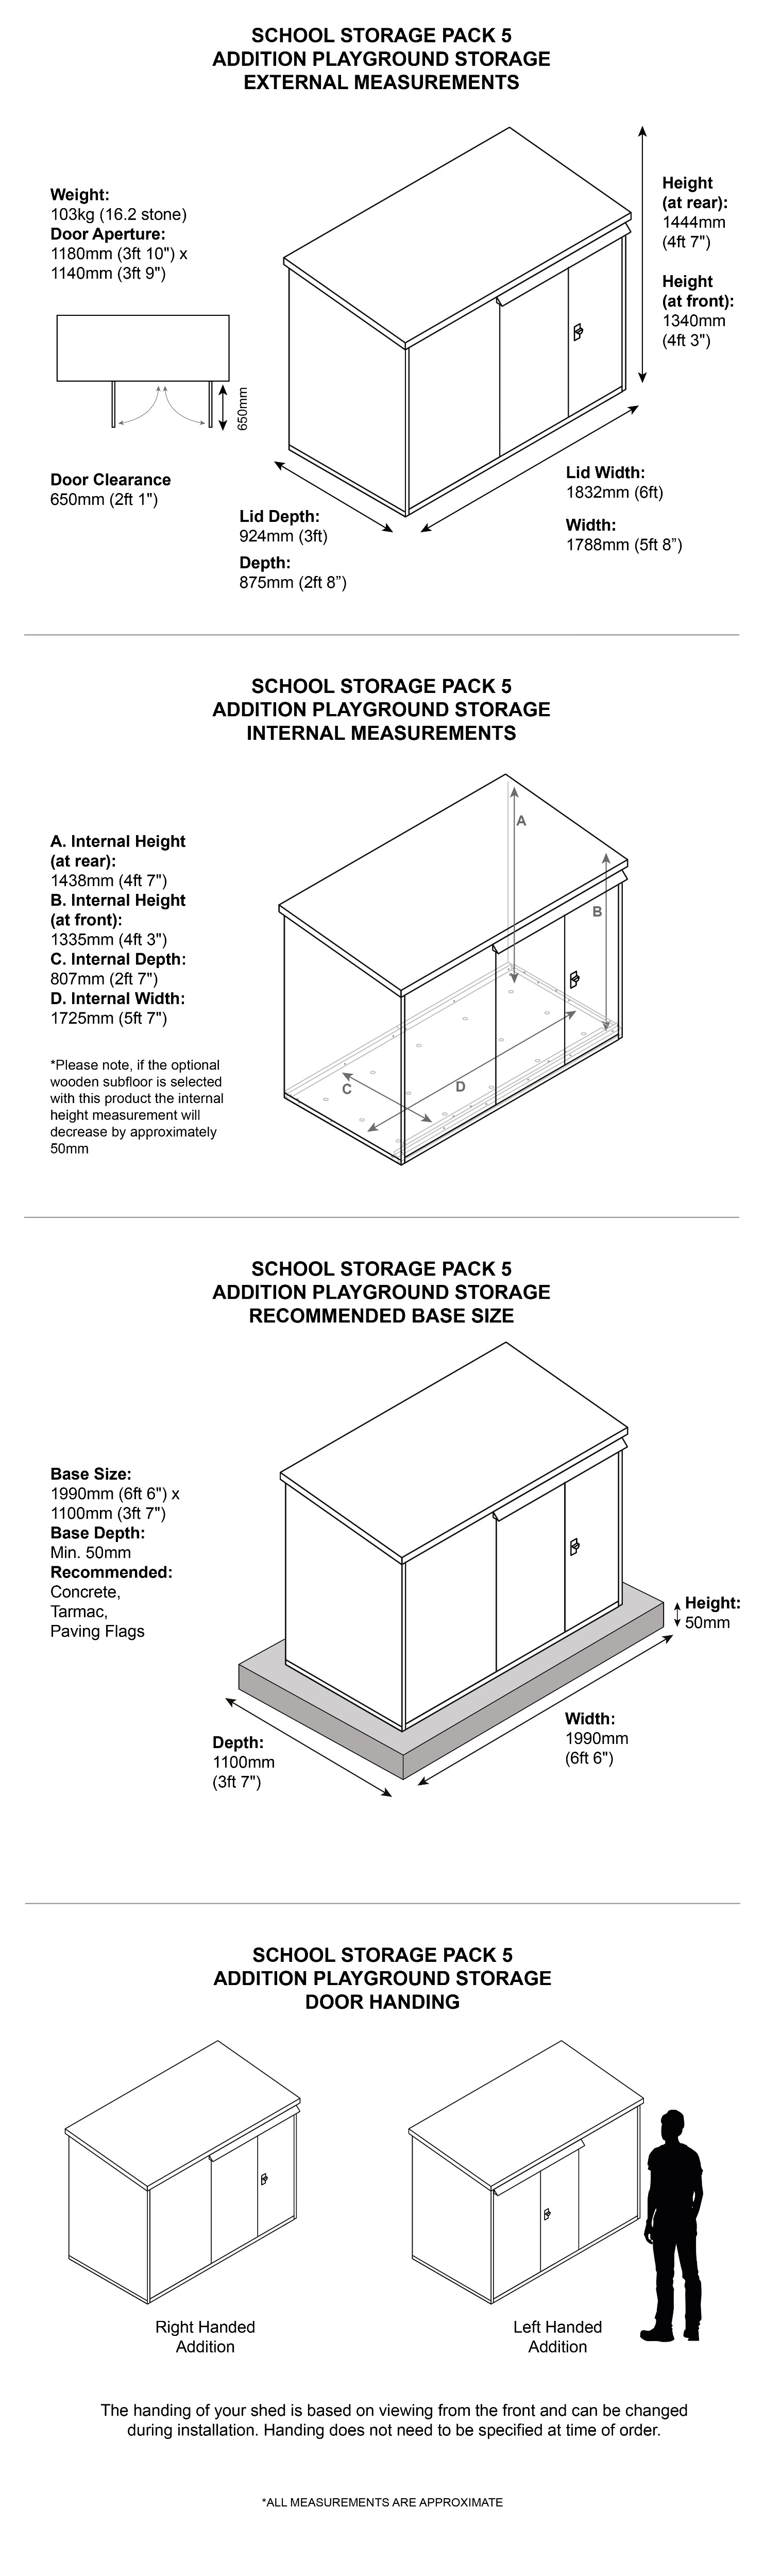 School Storage Pack 5 Dimensions